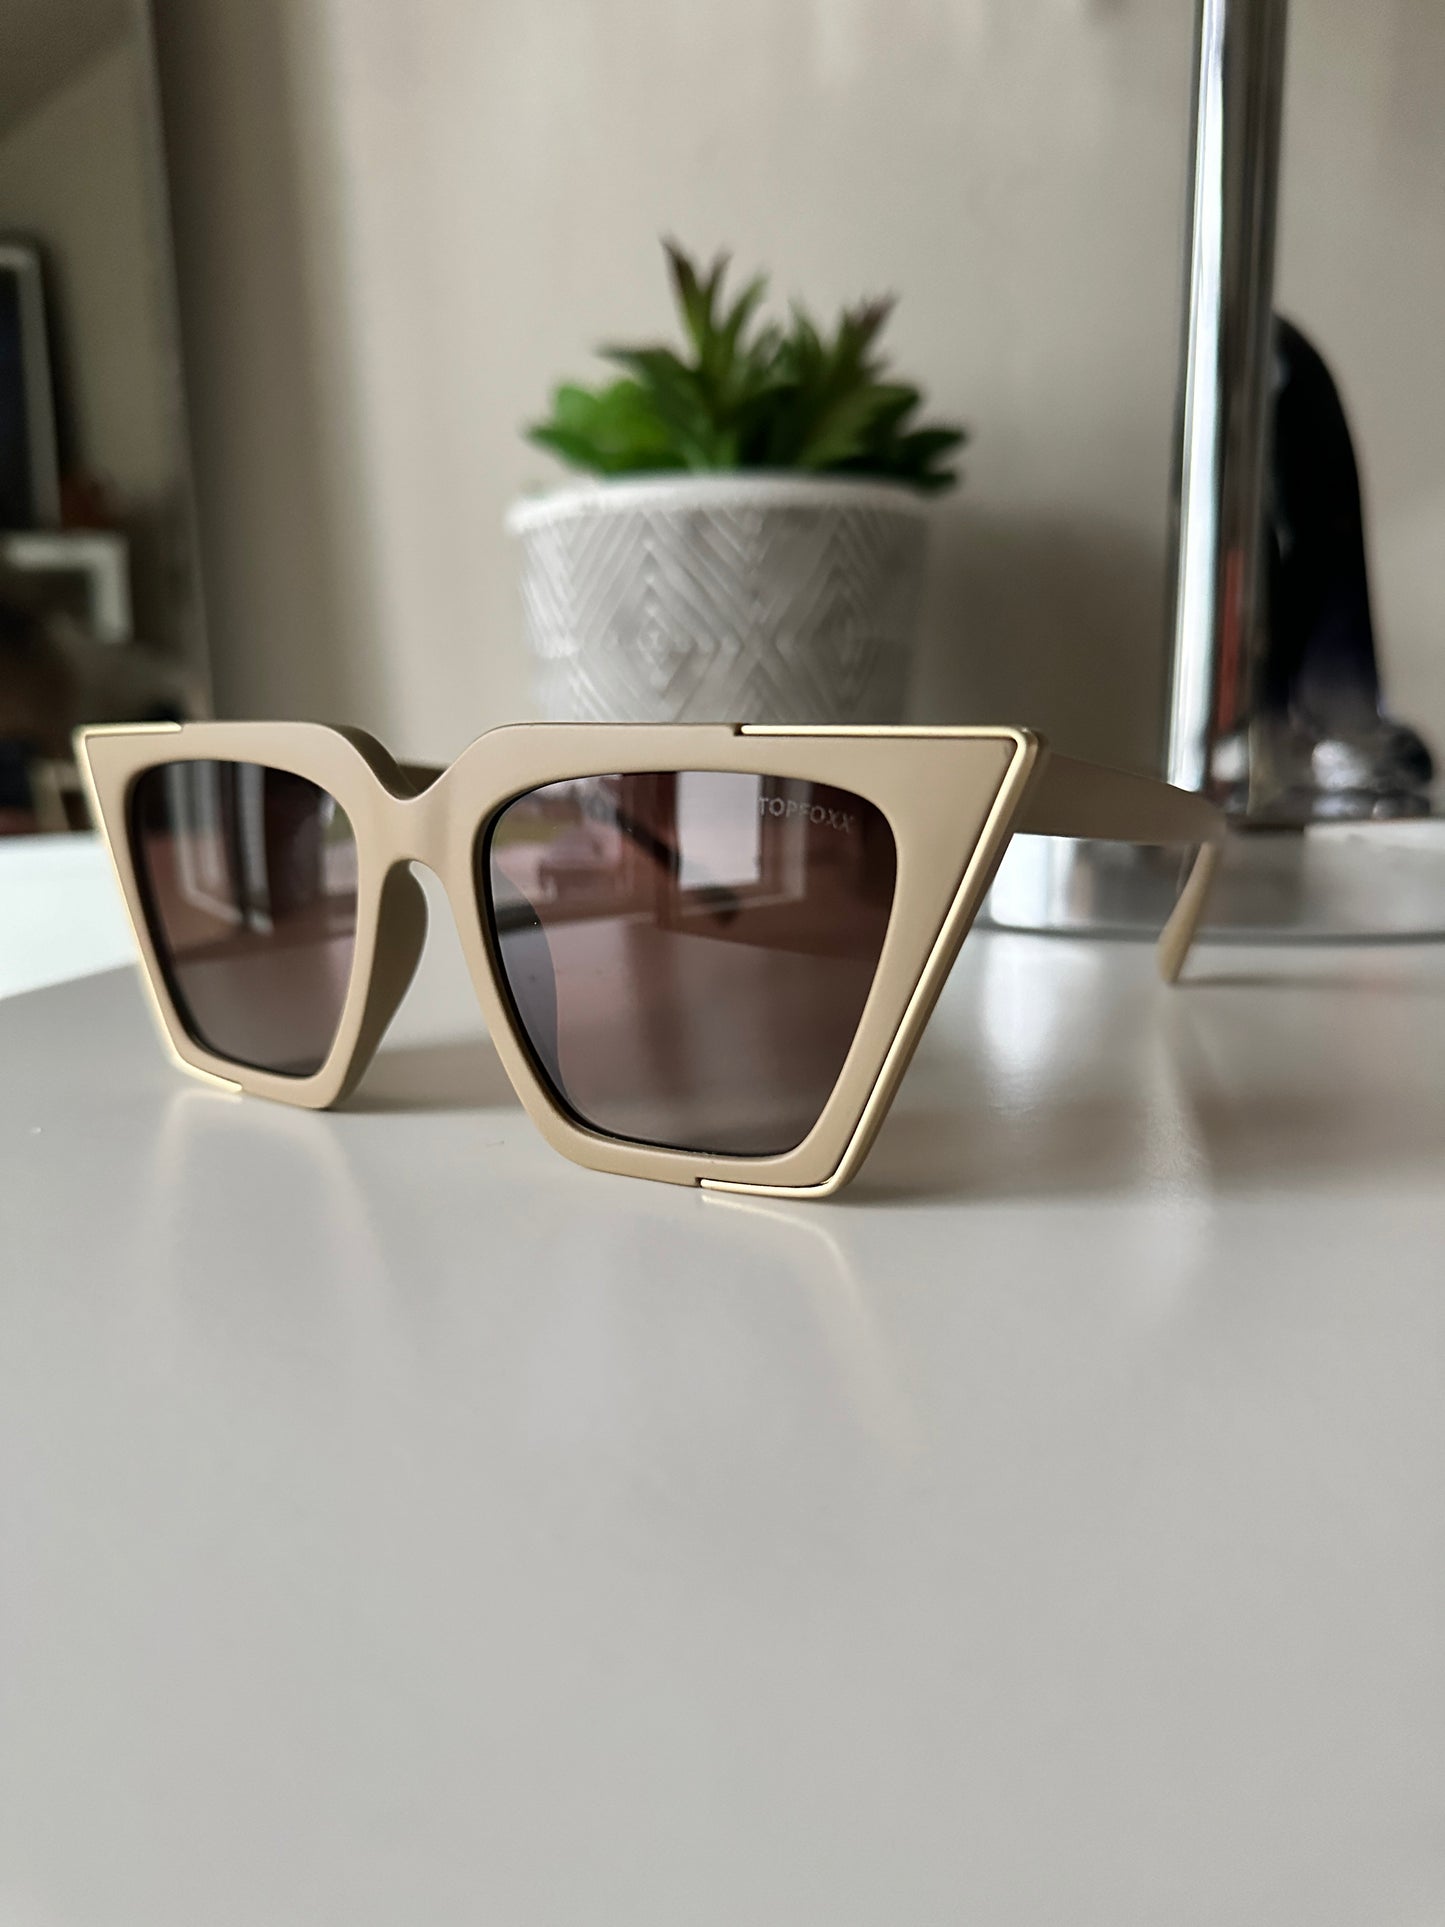 The CEO Sunglasses